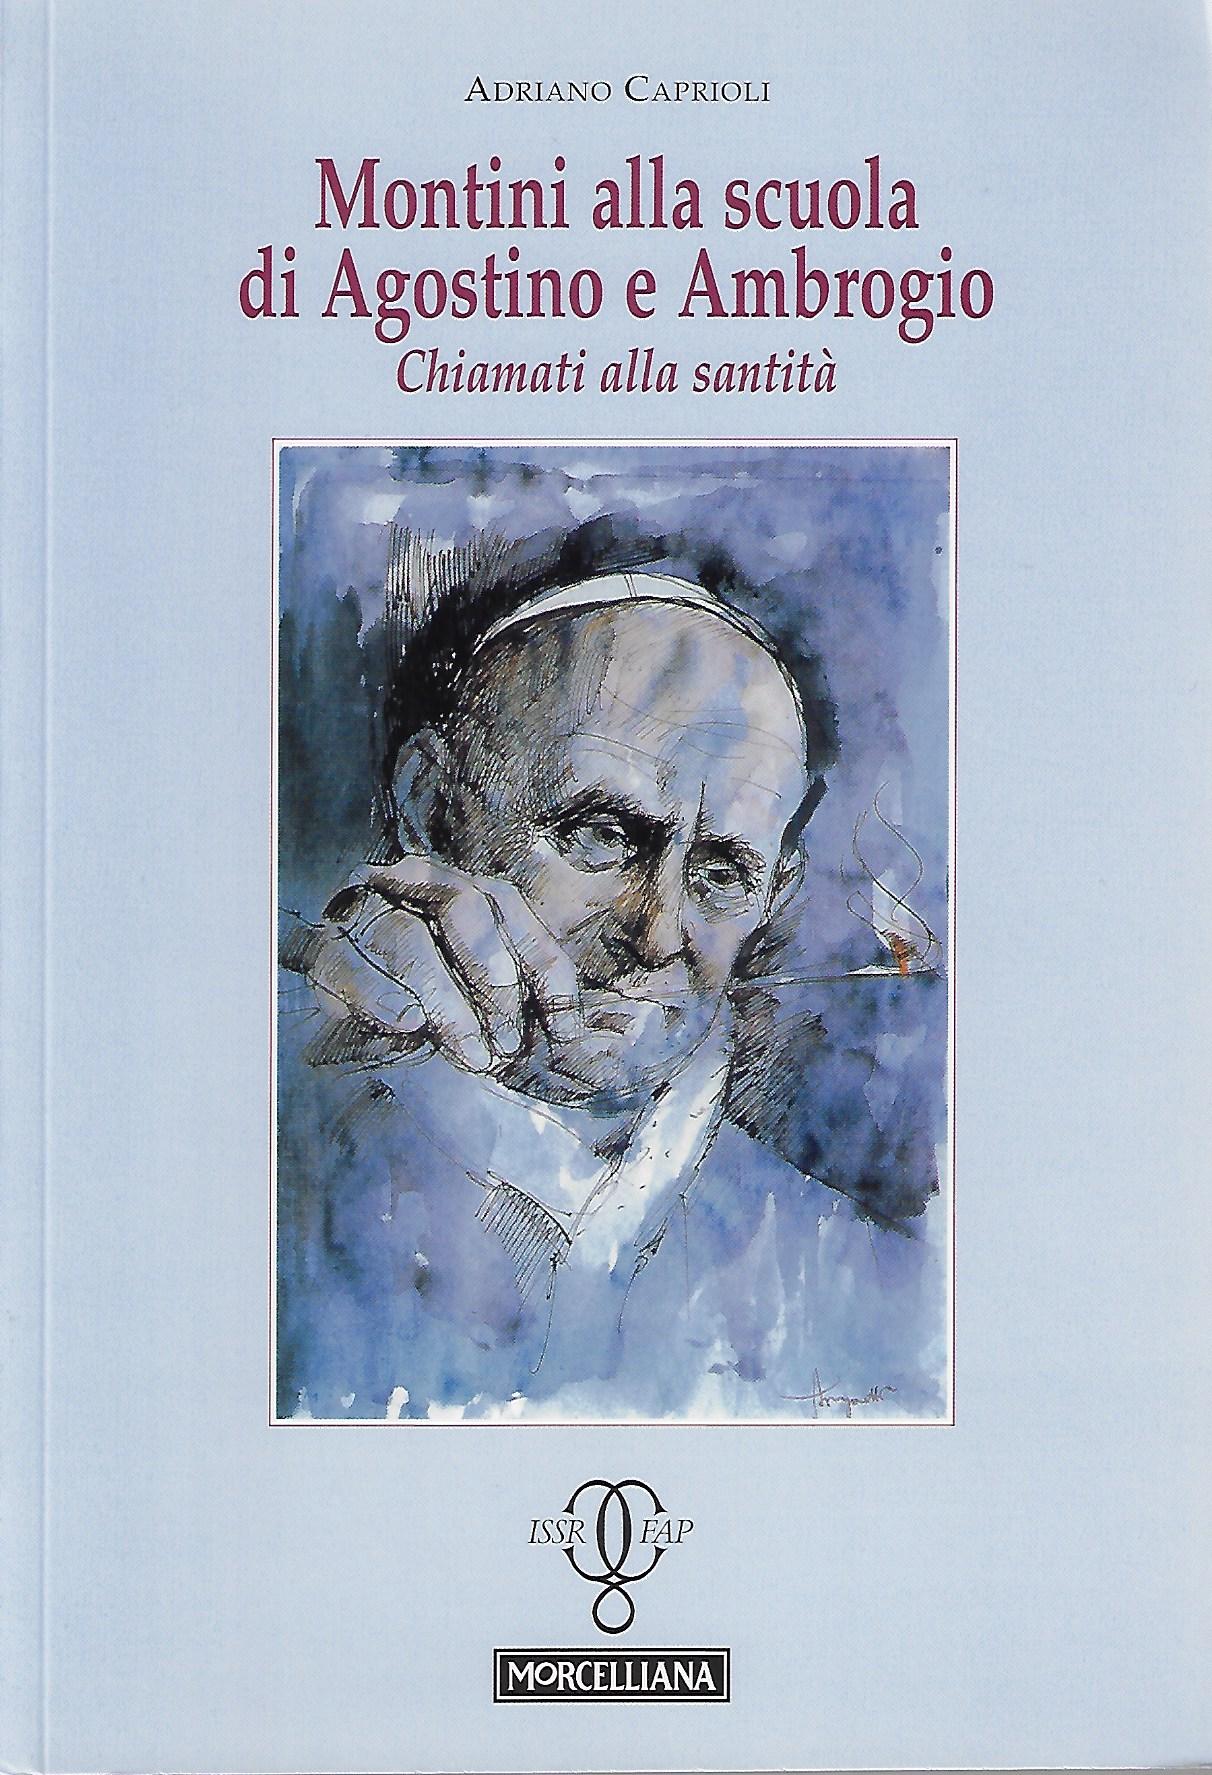 Adriano Caprioli, Montini alla scuola di Agostino e Ambrogio. Chiamati alla santità